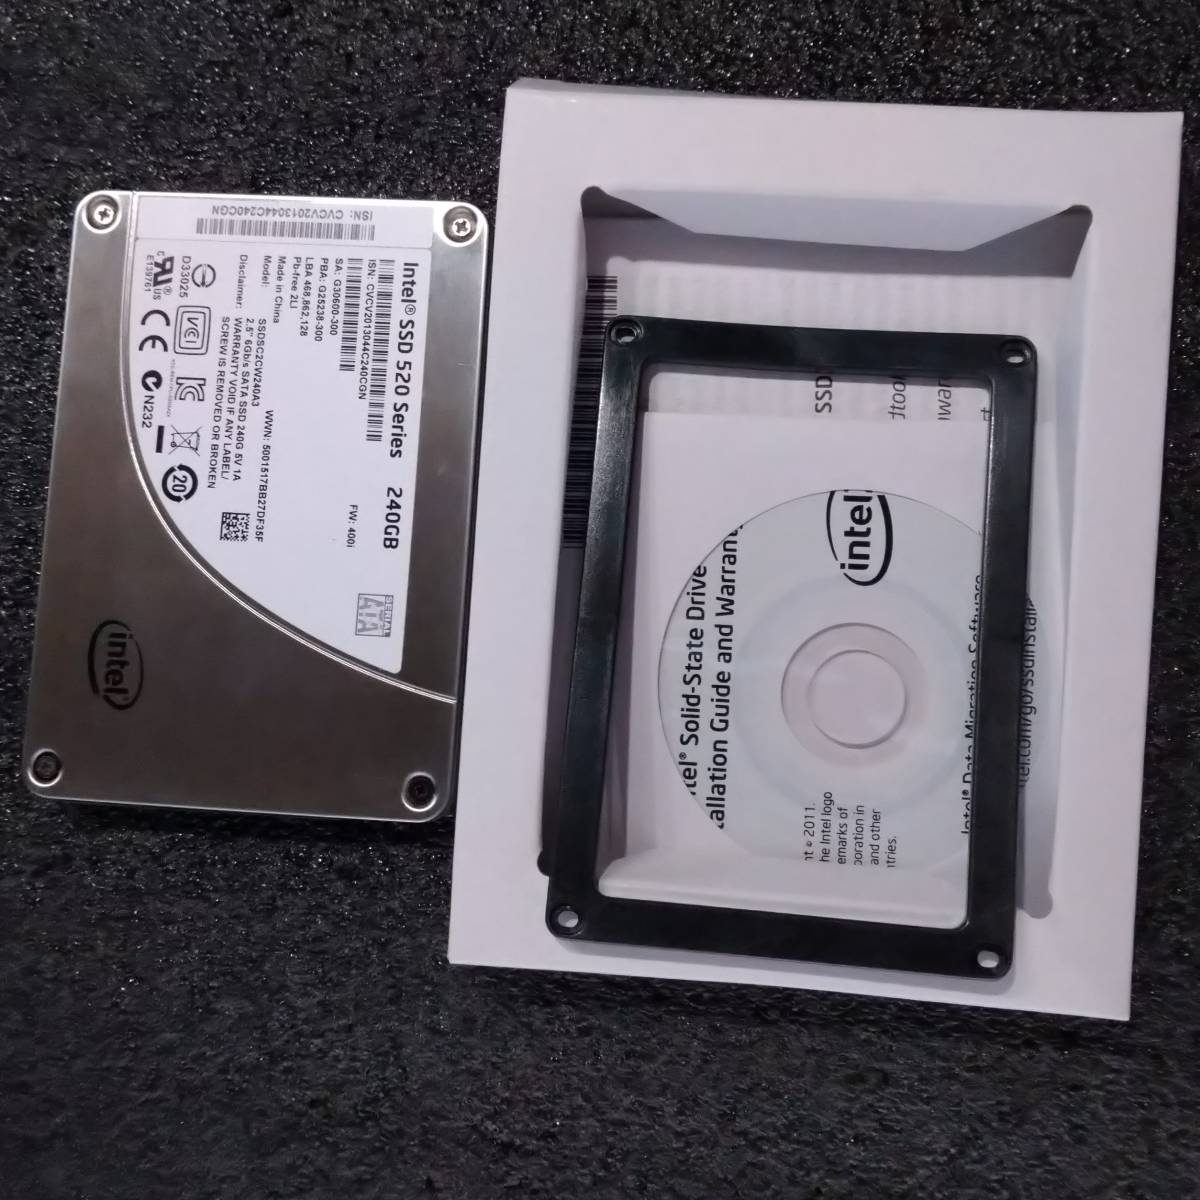 【中古】Intel SSD 520 Series 240GB SSDSC2CW240A3 [2.5インチ SATA SSD 7mm厚 MLC]_画像1